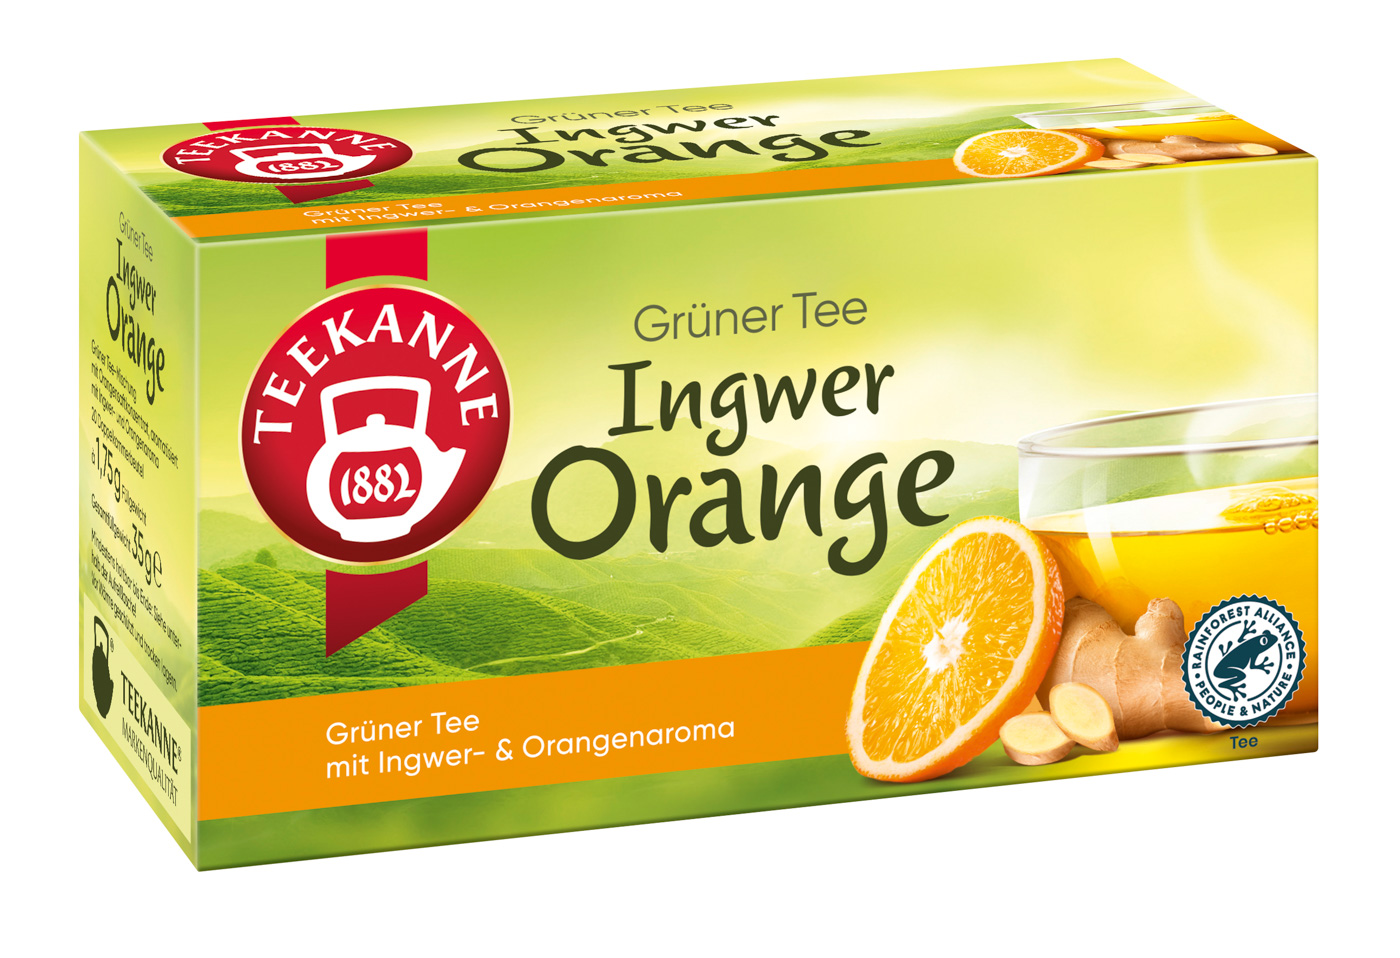 Grüner Tee Ingwer-Orange von Teekanne. Inhalt: 20 Teebeutel à 1,8 g, einzeln kuvertiert, Grüner Tee, fruchtig und würzig.